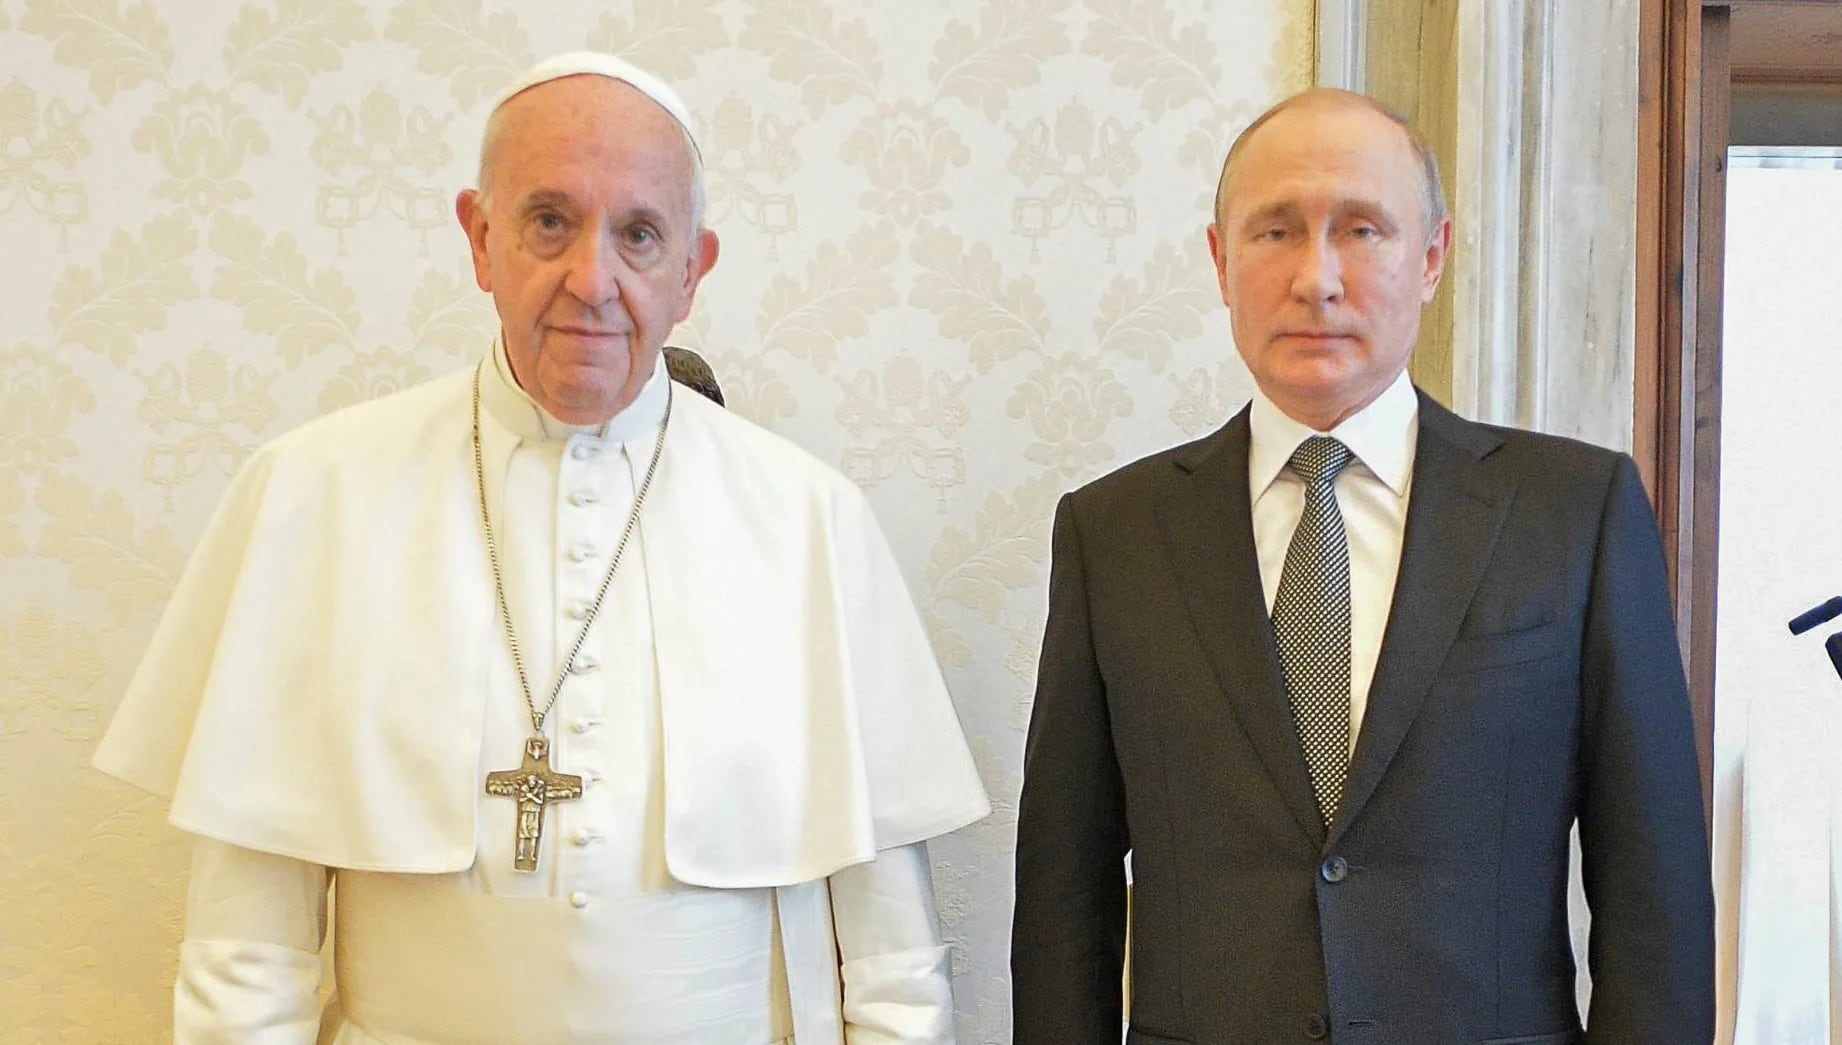 El papa Francisco habló por primera vez de Vladimir Putin desde la invasión a Ucrania: “Detenga esta espiral de violencia y muerte”